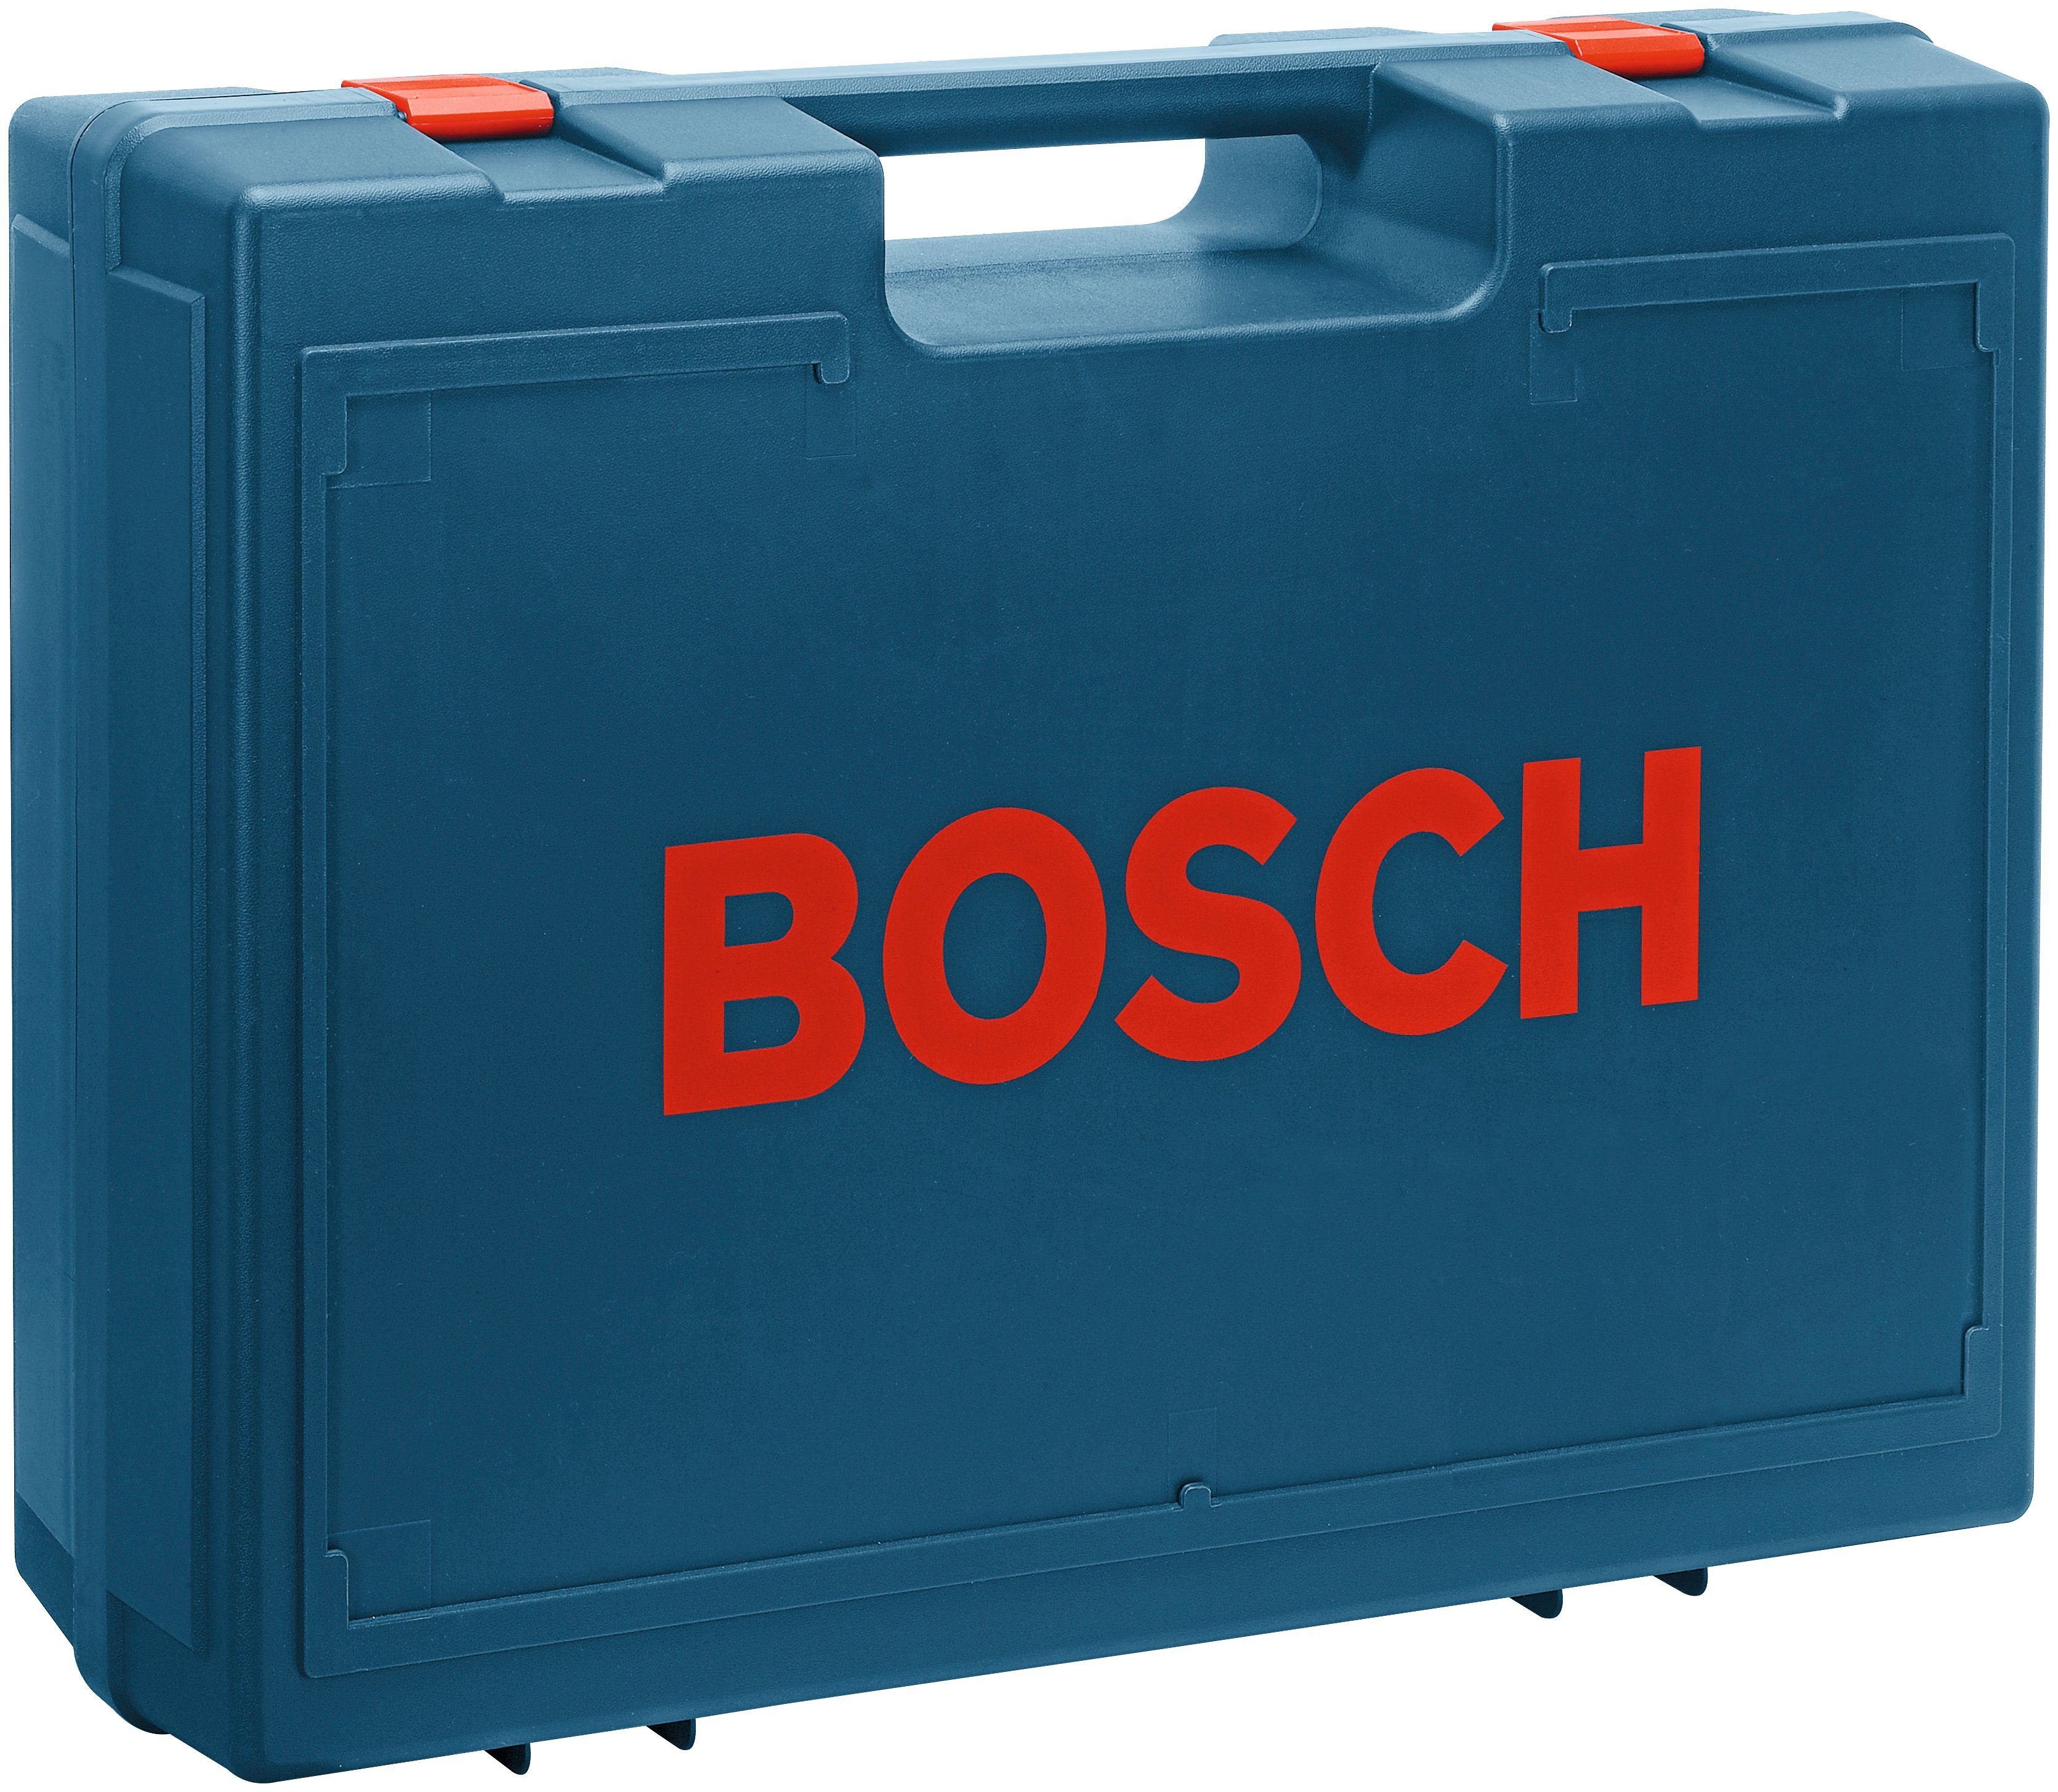 Bosch Professional Exzenterschleifer GEX 125-1 AE, U/min 24000